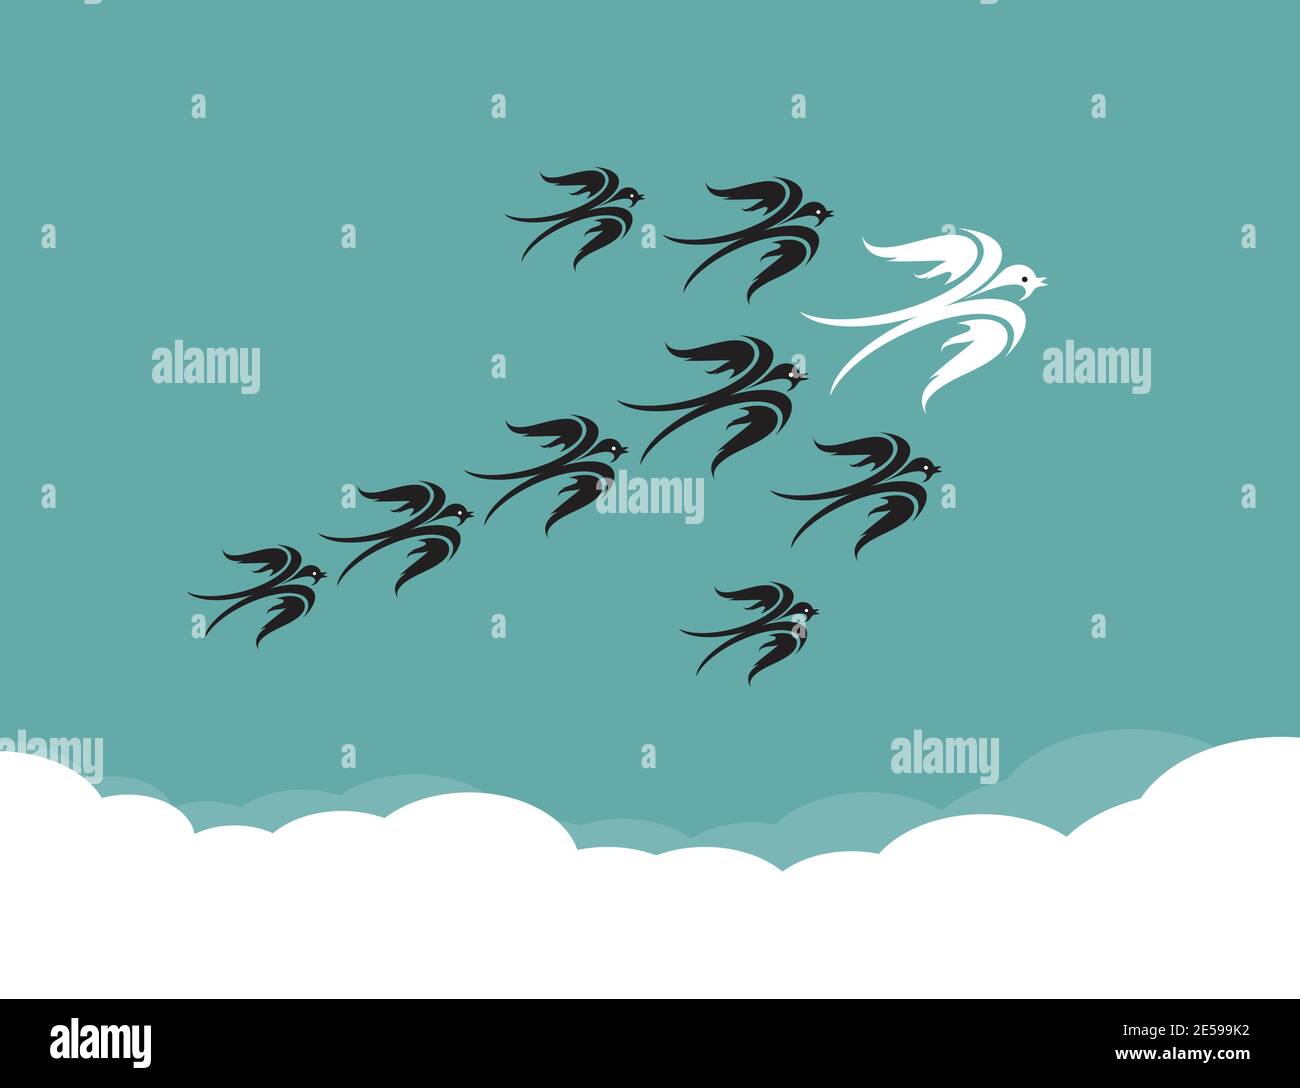 Troupeau d'oiseaux (hirondelle) volant dans le ciel, concept de leadership. Illustration vectorielle superposée facile à modifier. Illustration de Vecteur